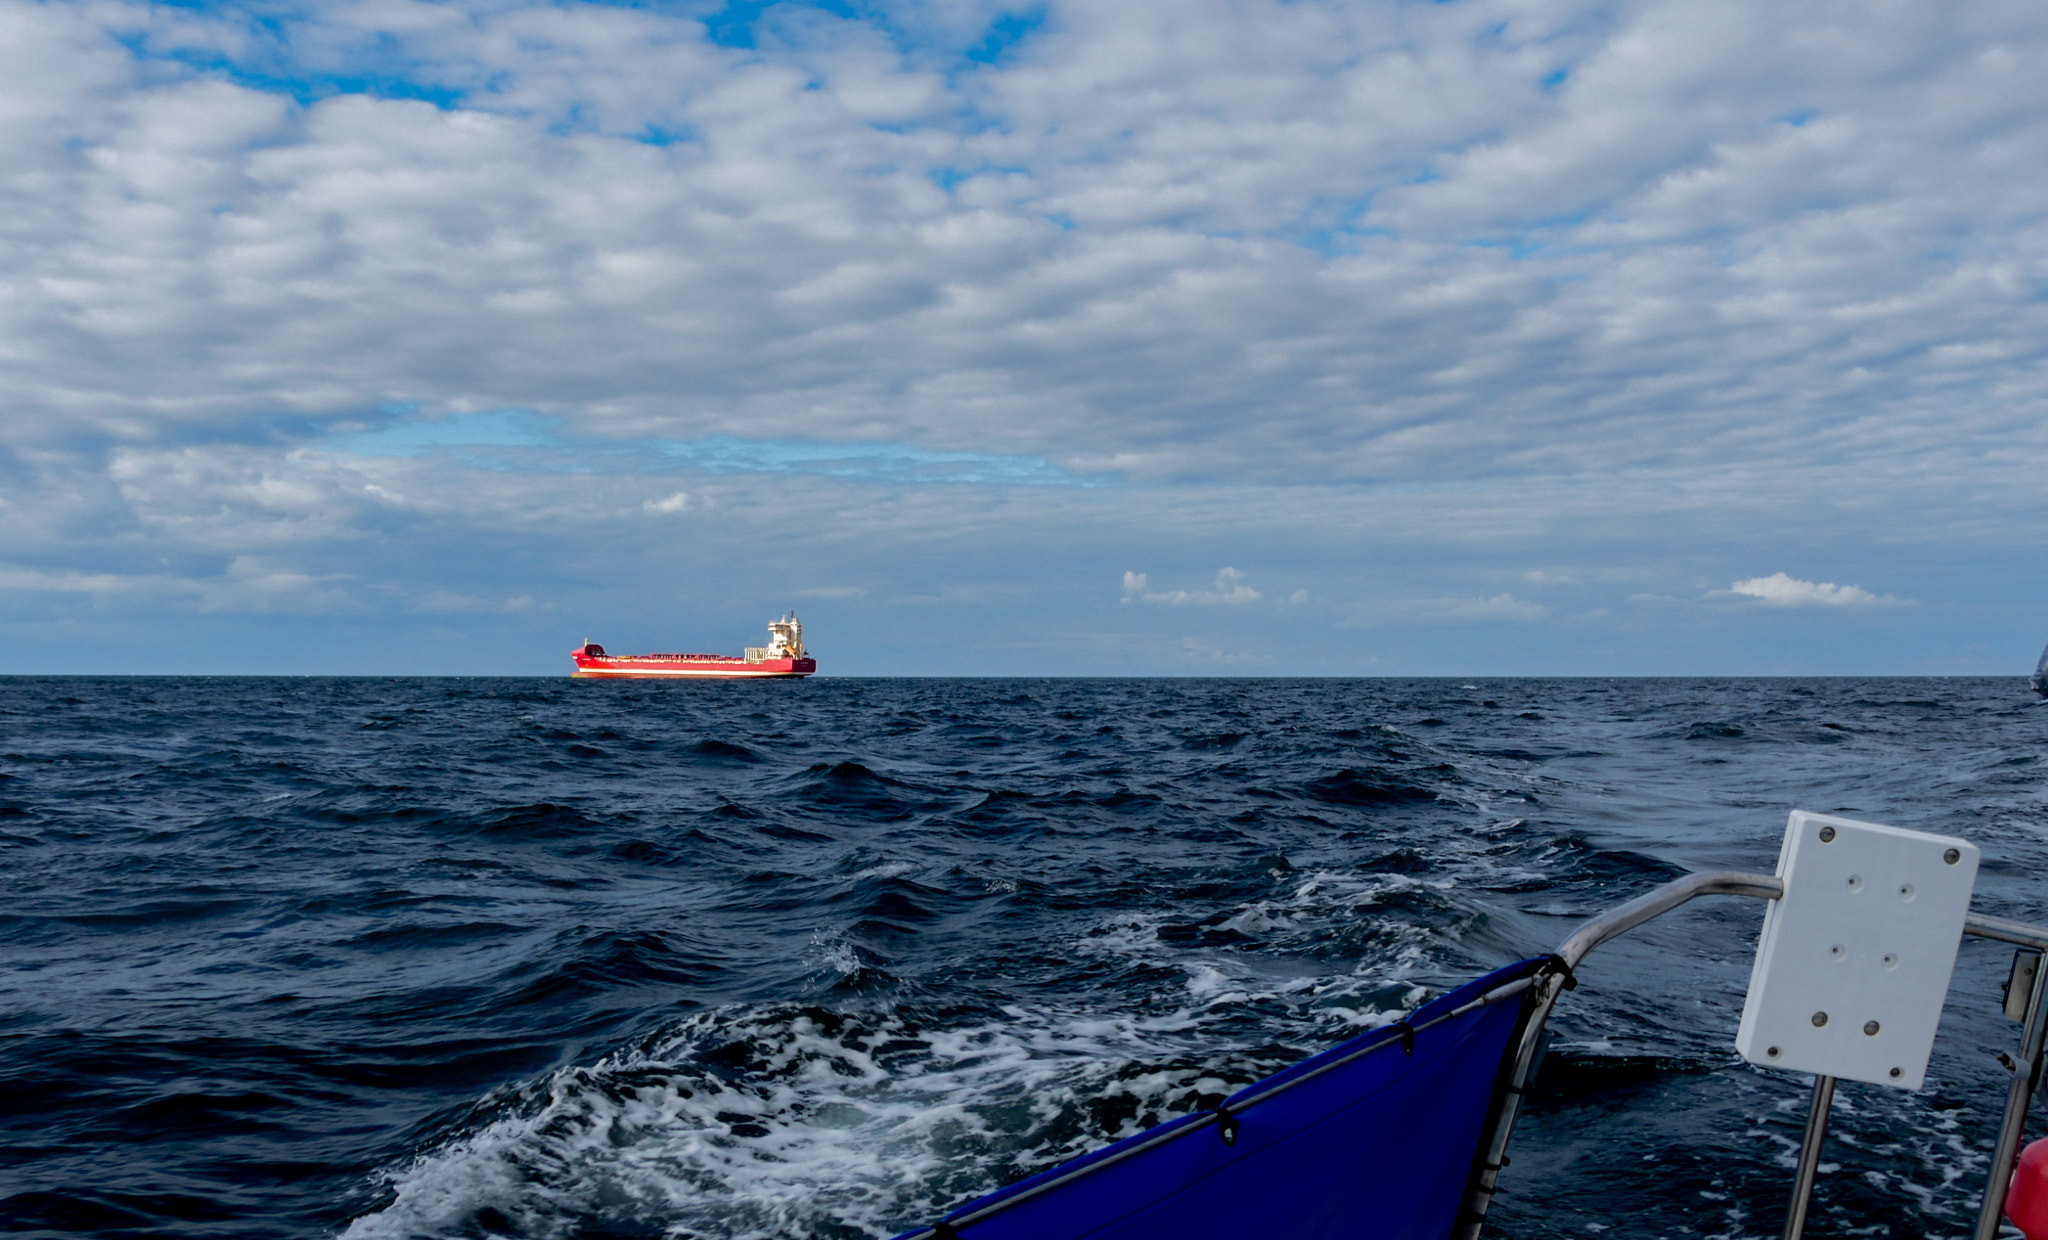 Panasonic Lumix DMC-GH4 sample photo. Sailing at the baltic sea photography